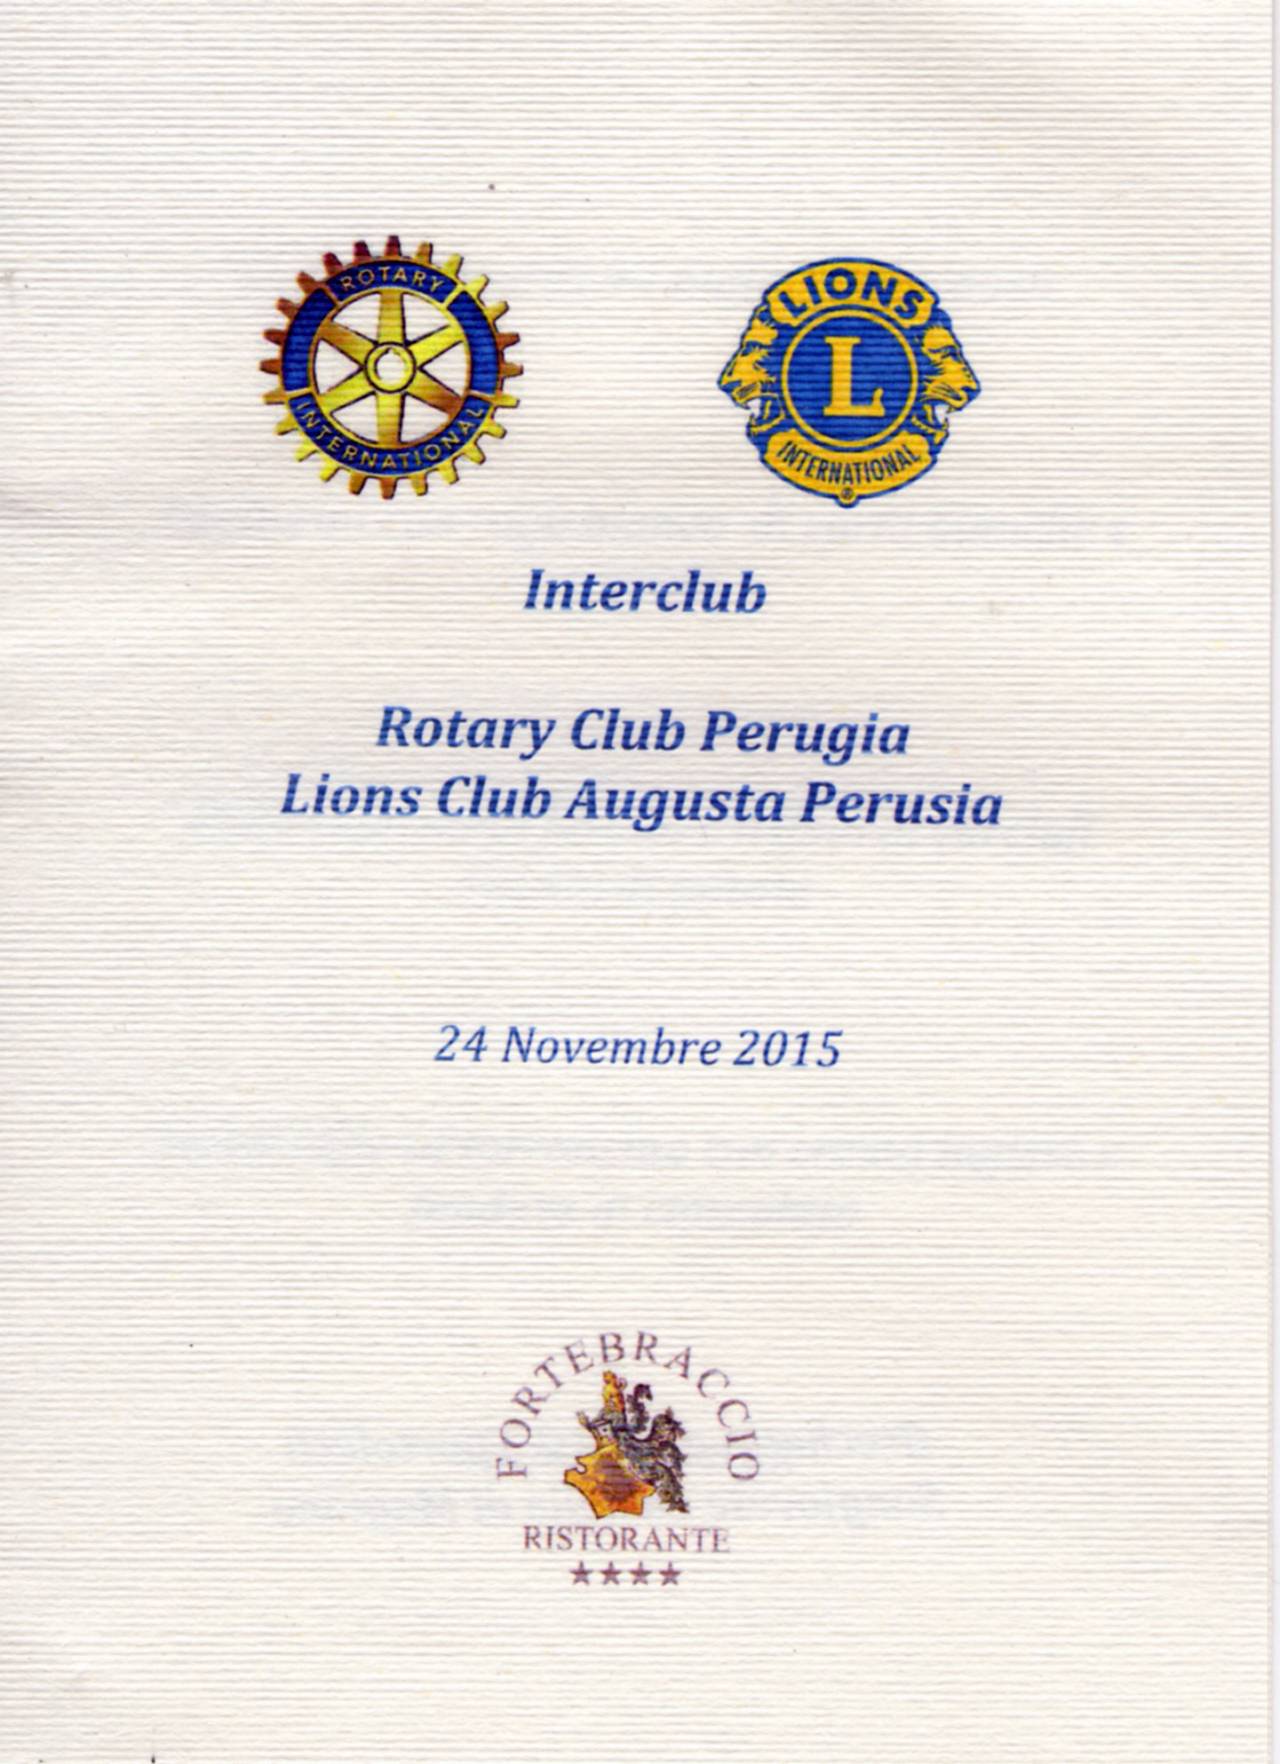 ©rinodimaio- R.C.Perugia Conviviale Plaza Interclub con Lions Perugia 24 novembre 2015 - n.001